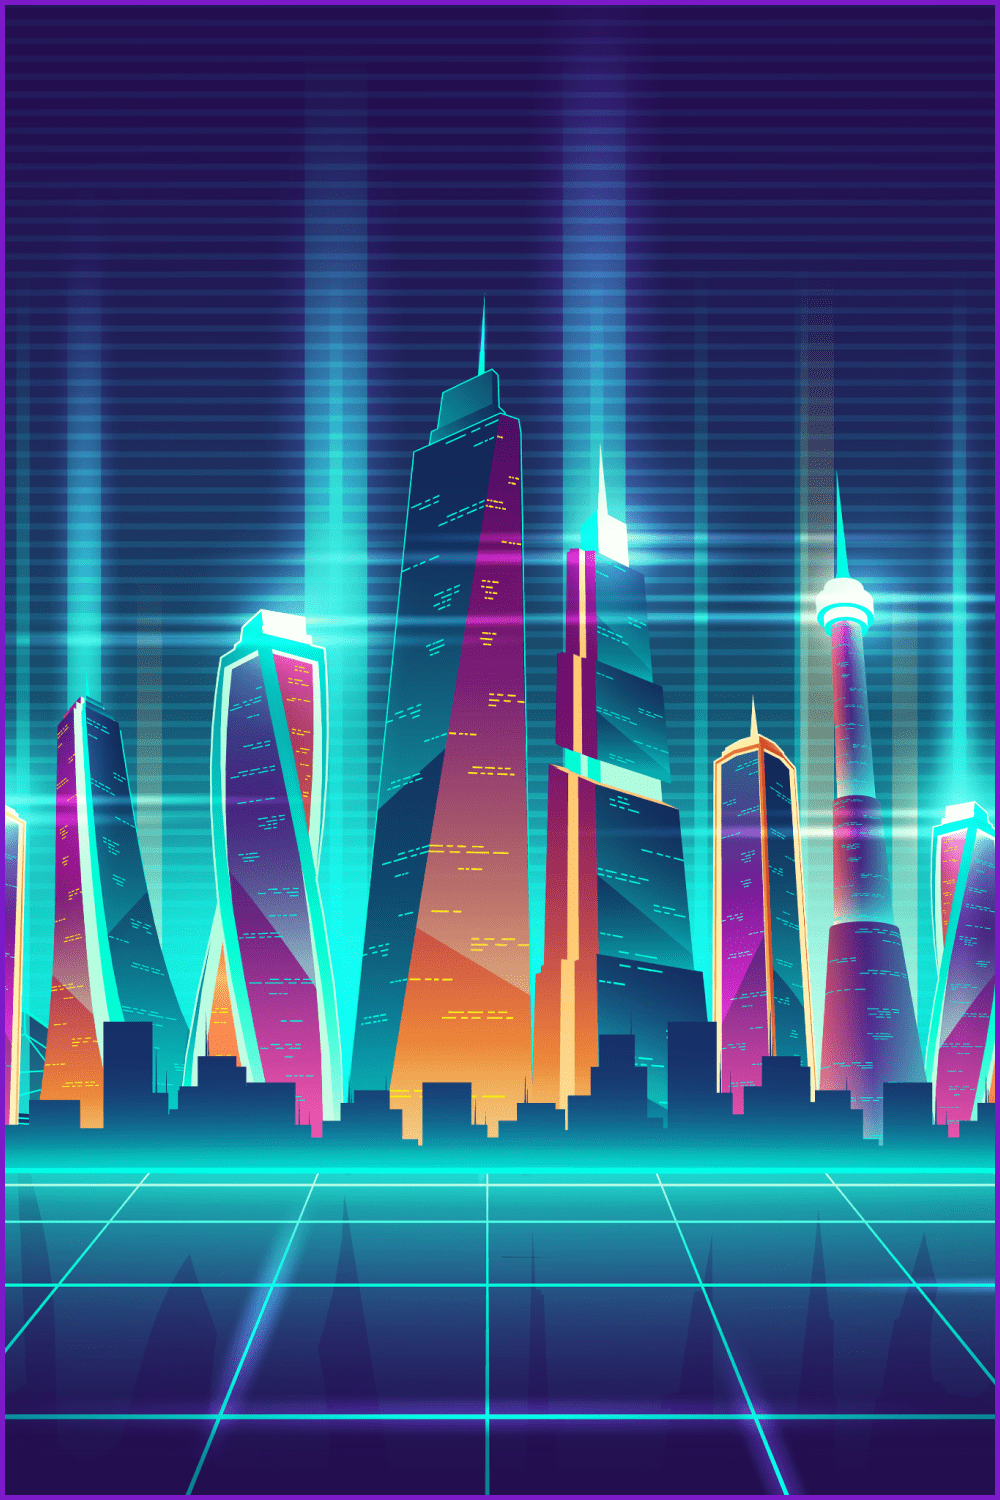 Drawn skyscrapers in neon illumination.